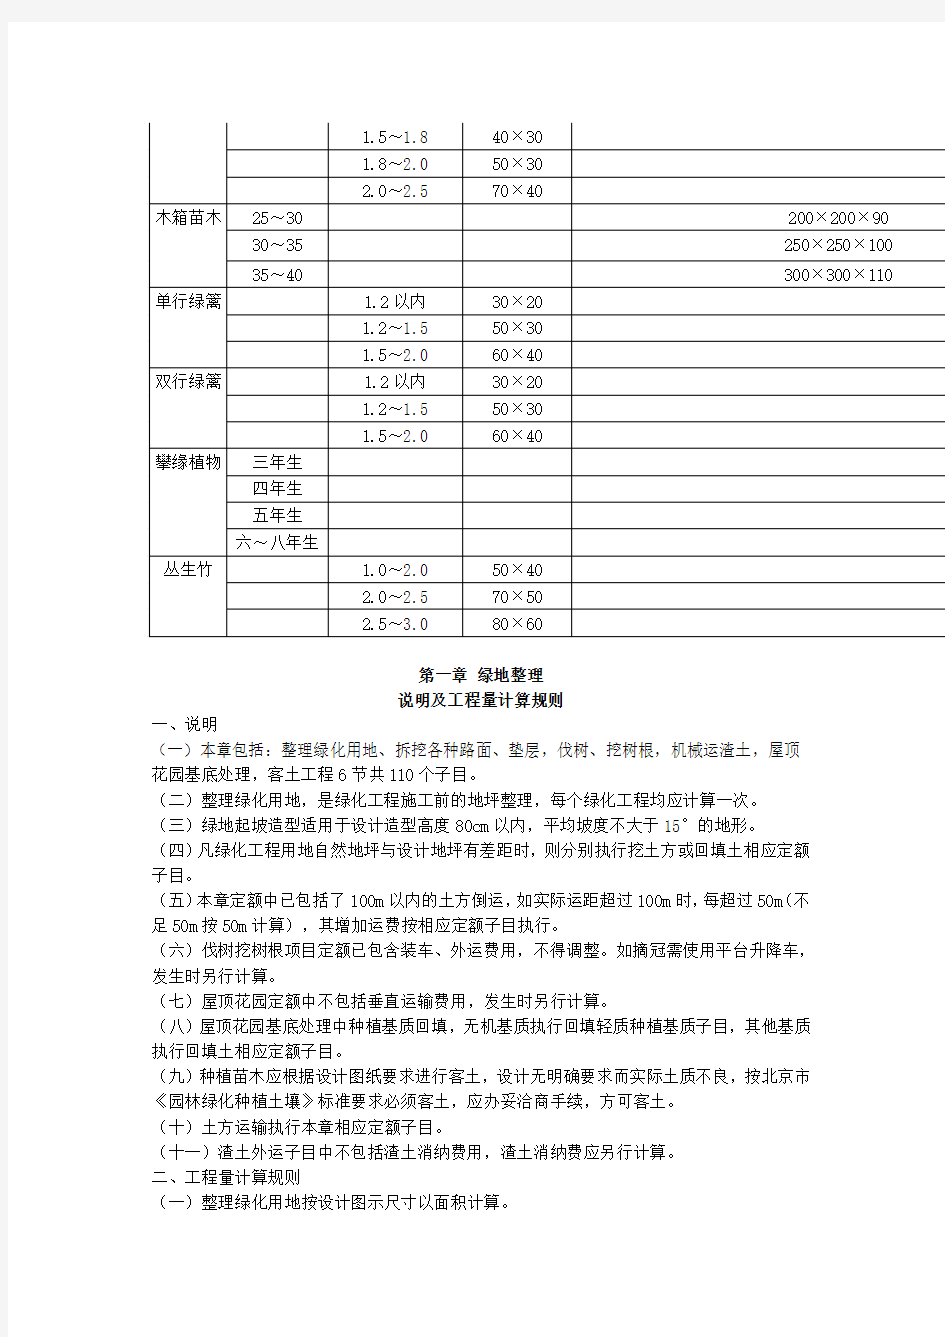 2012北京园林绿化工程预算定额